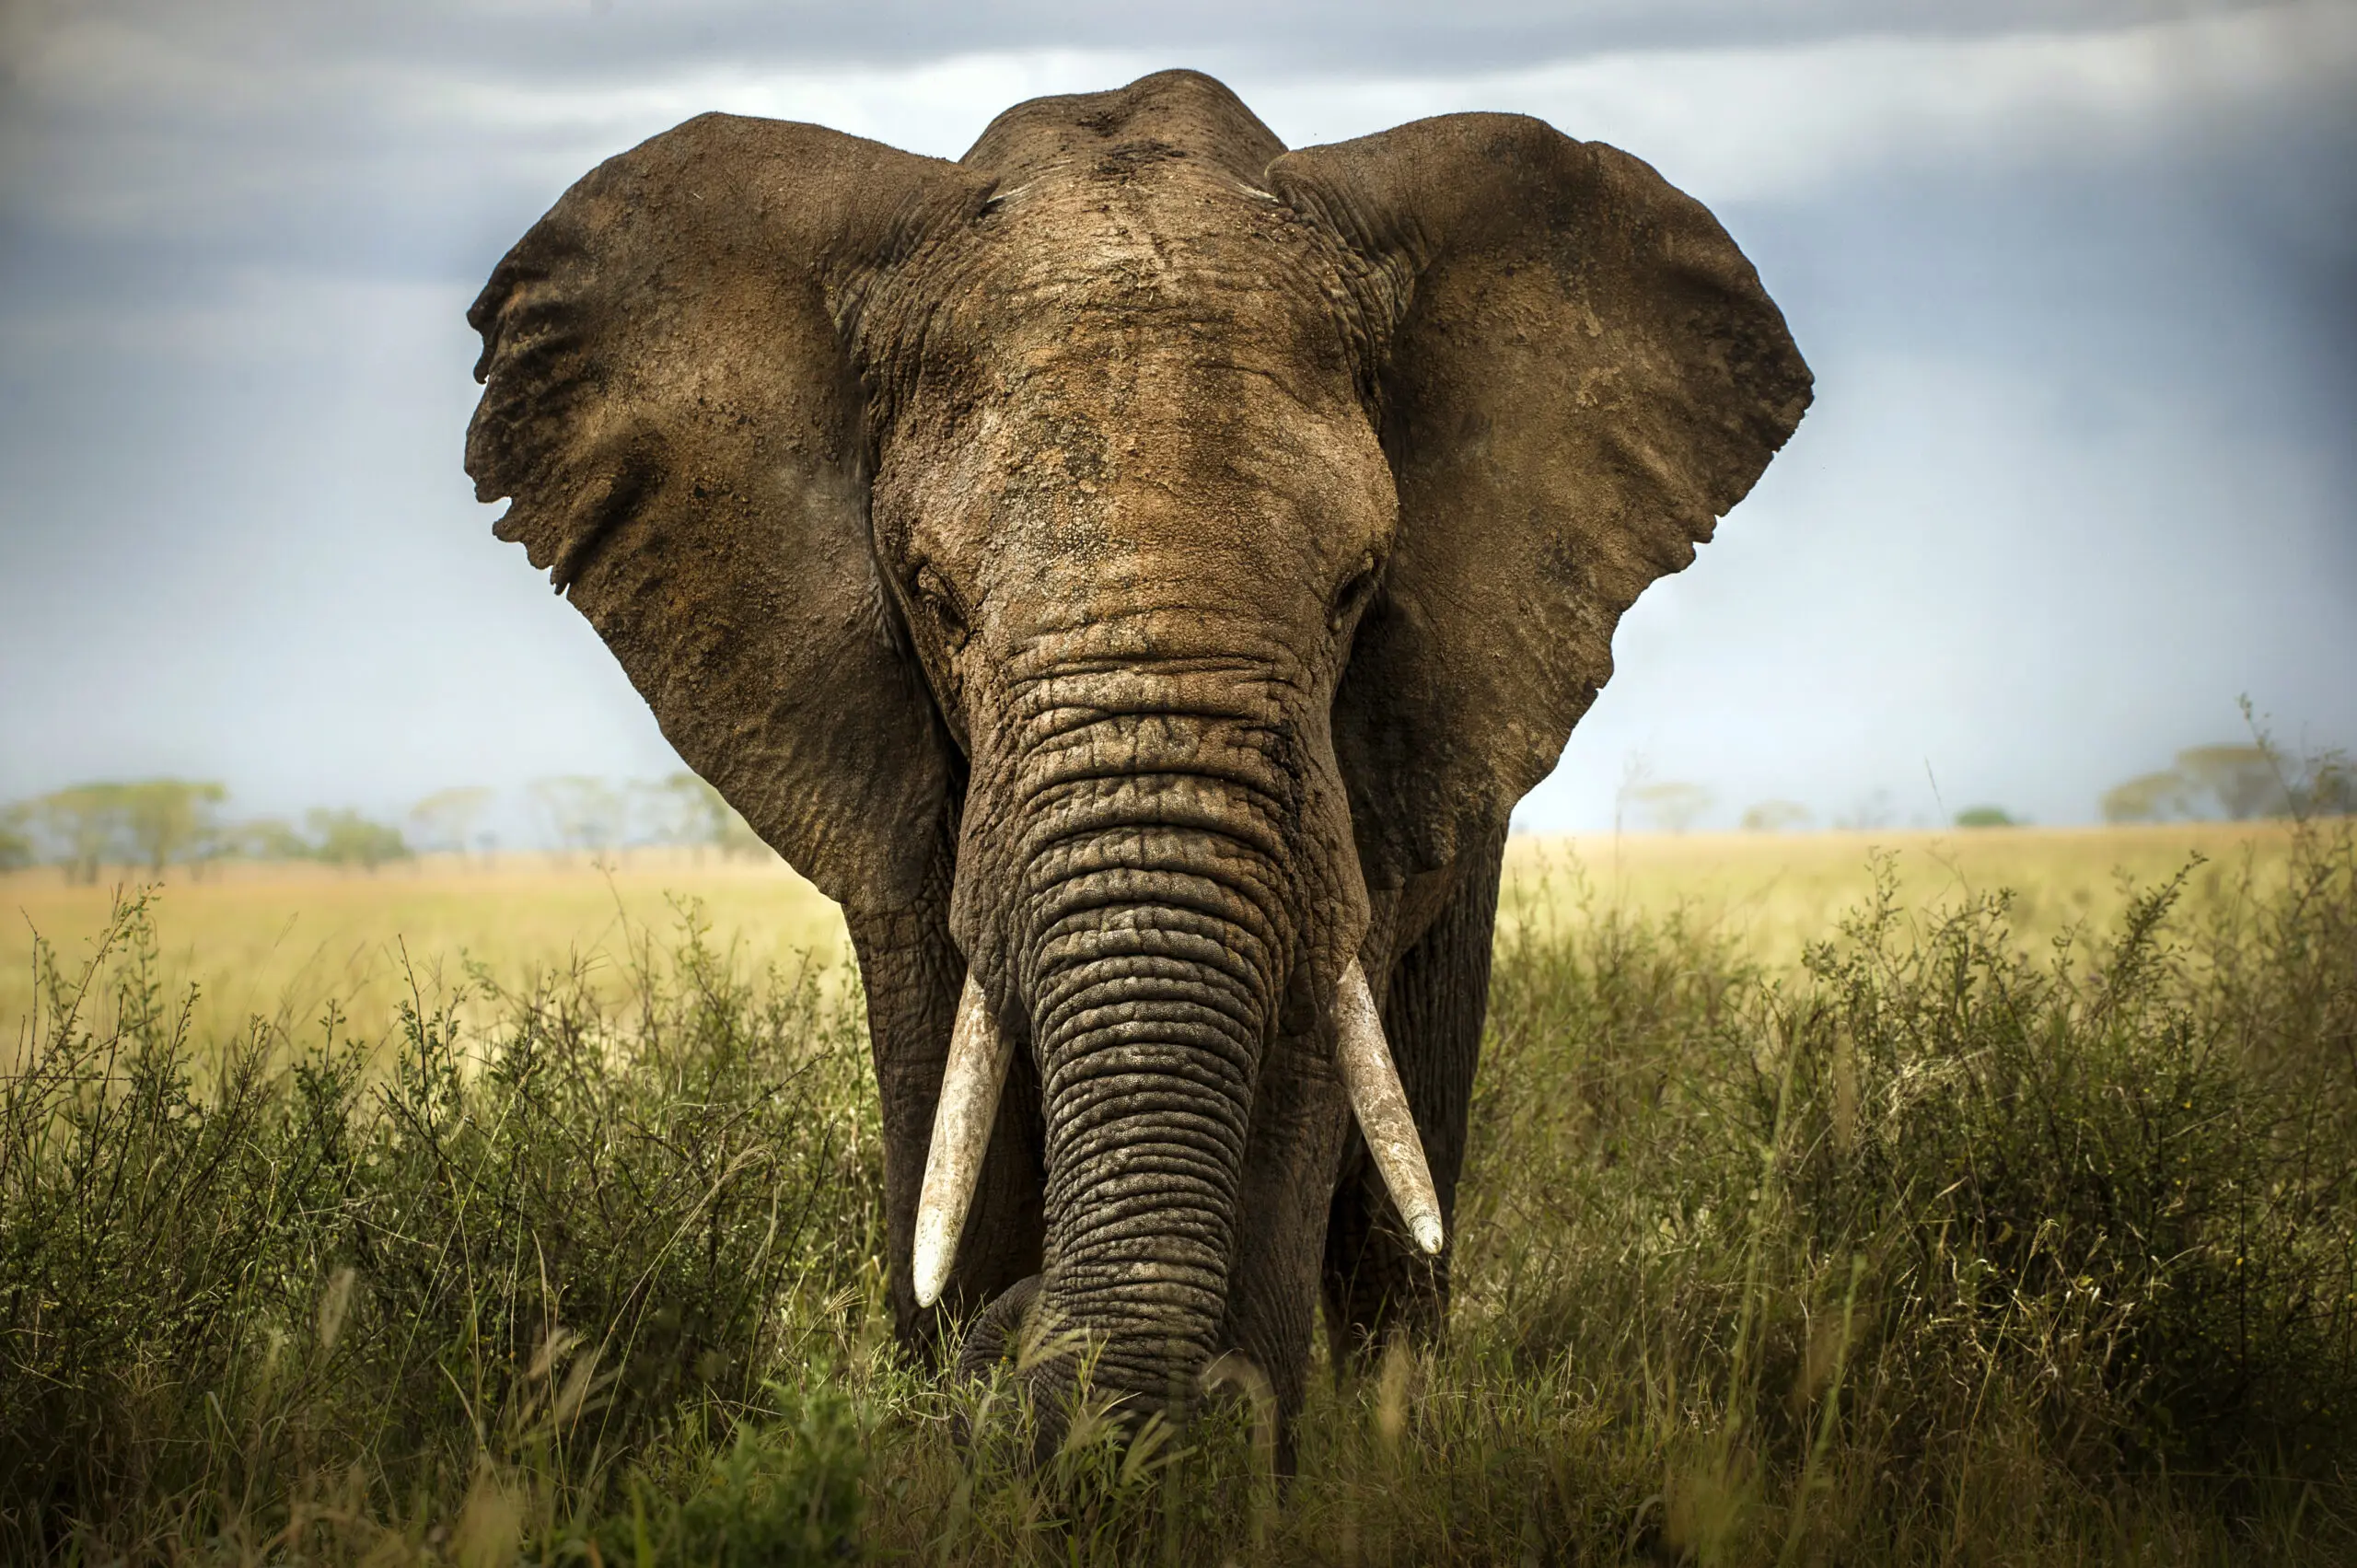 Wandbild (3368) Encounters in Serengeti präsentiert: Tiere,Aus Afrika